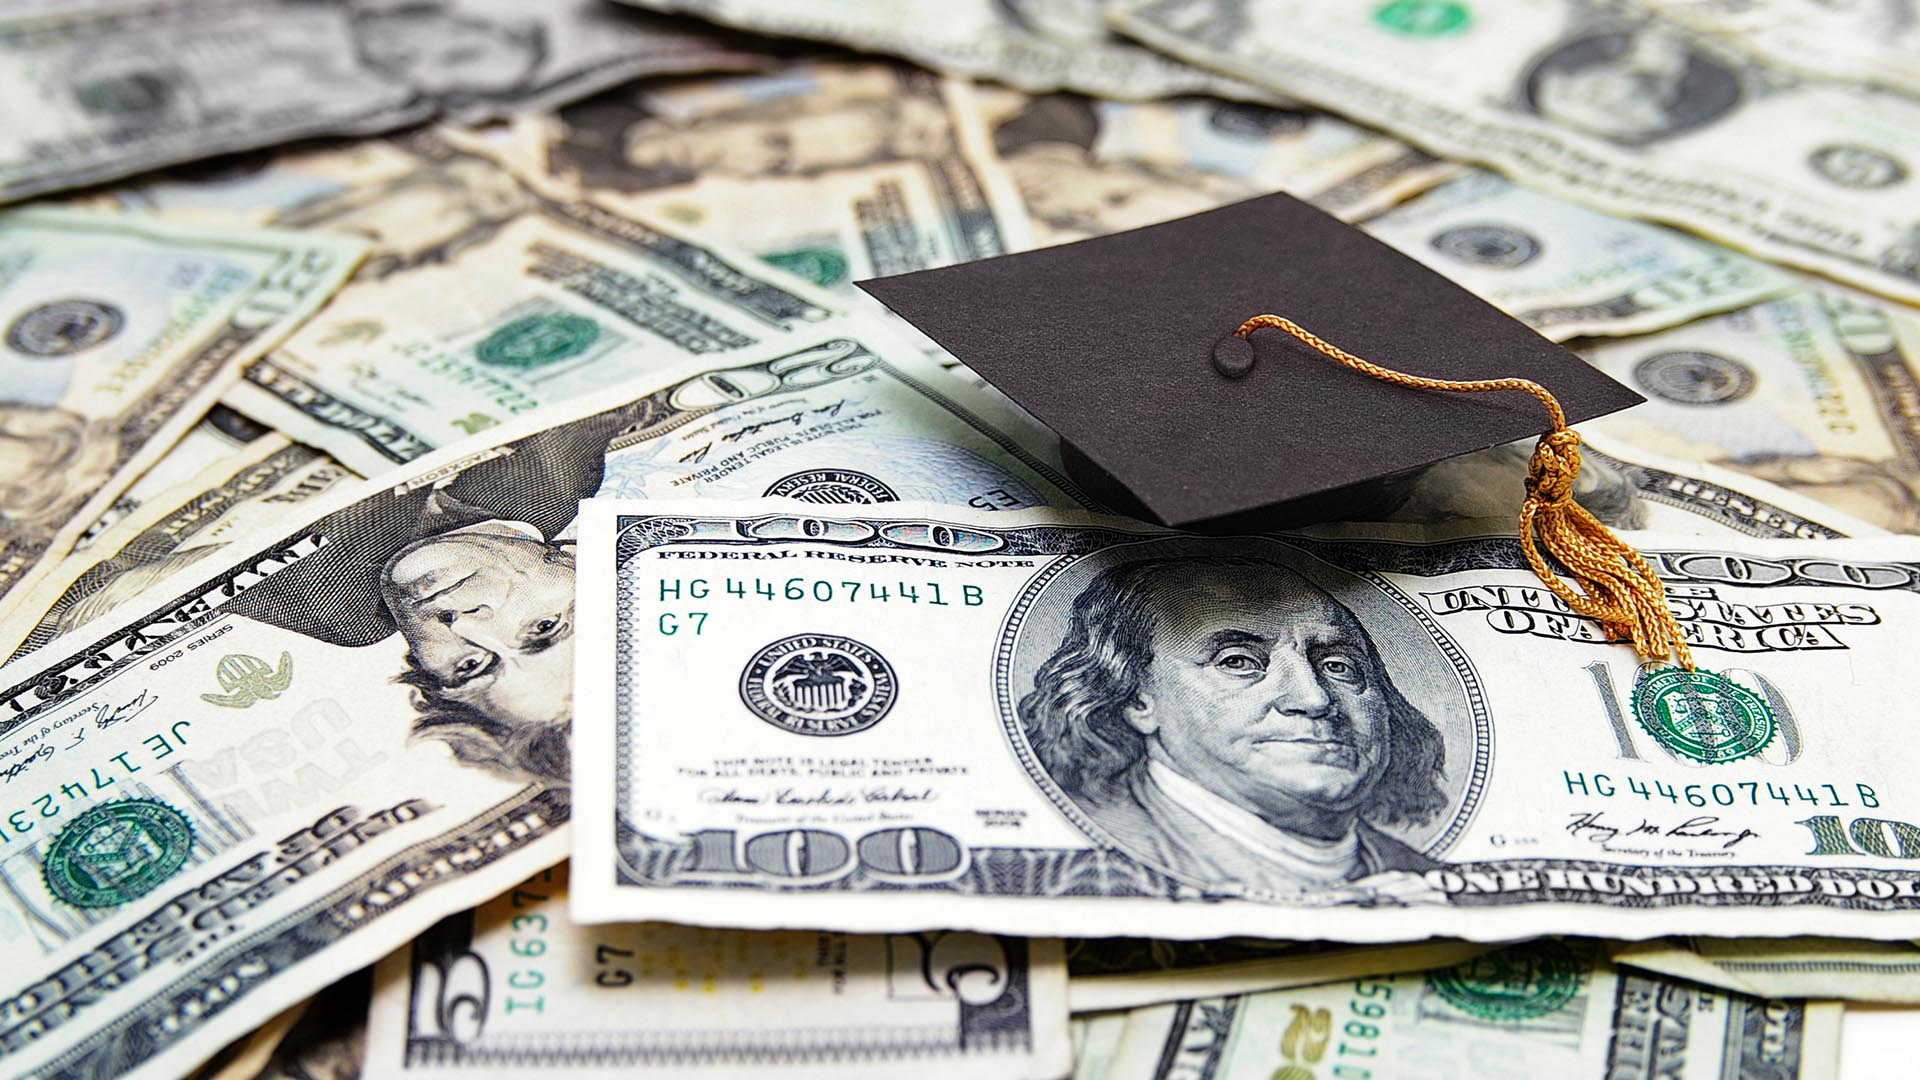 Money bills and graduation cap